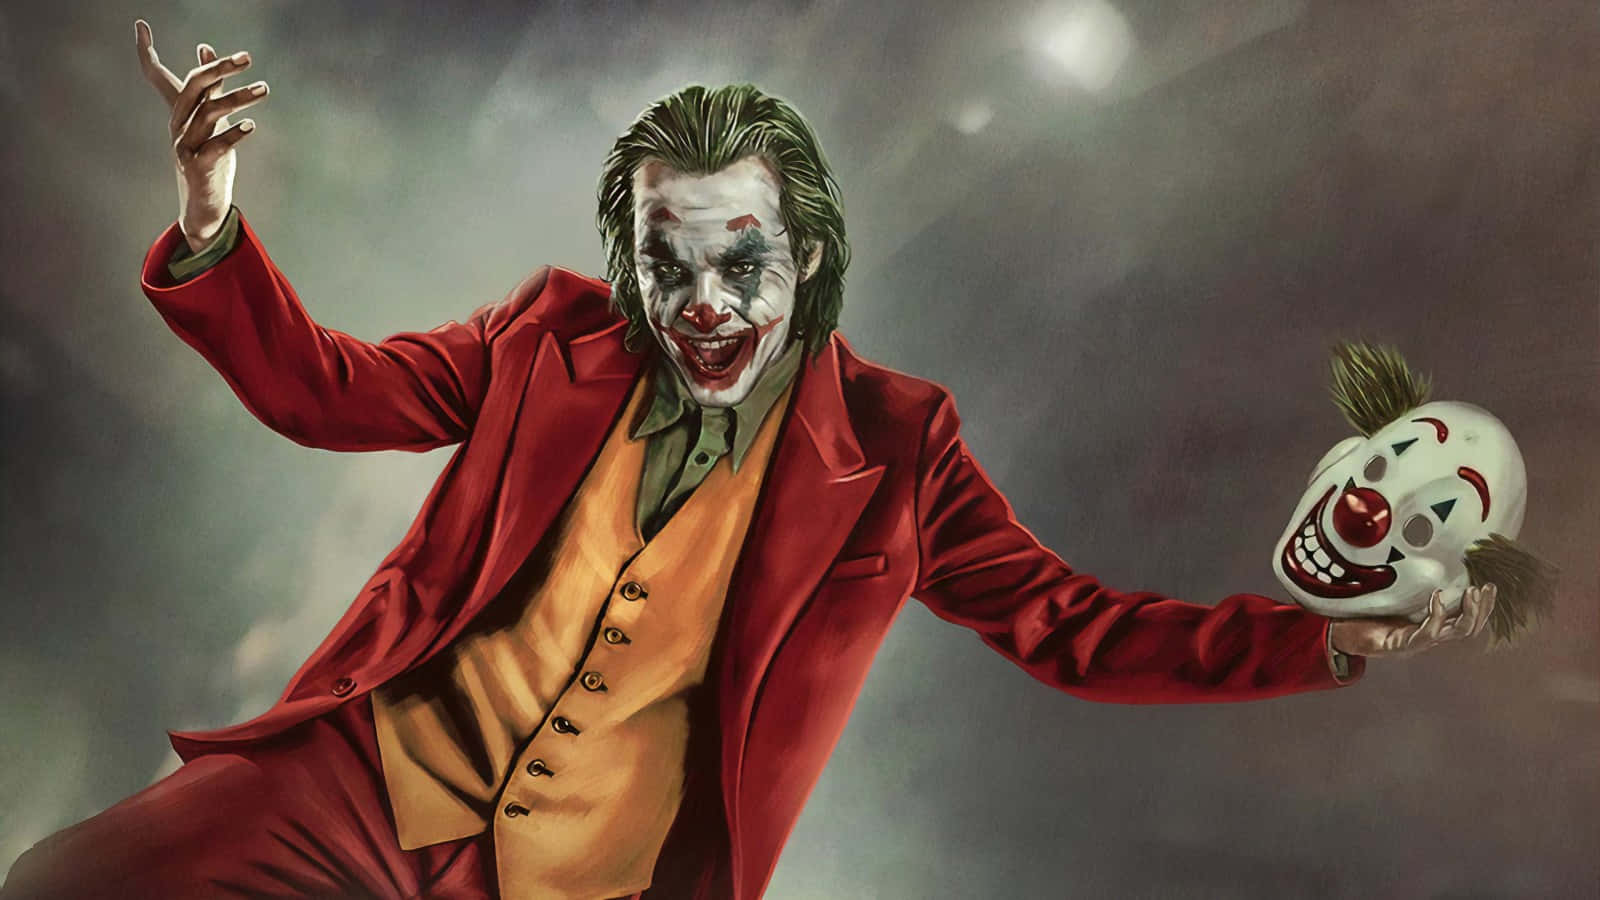 Einunvergesslicher Bösewicht - Die Joker-maske